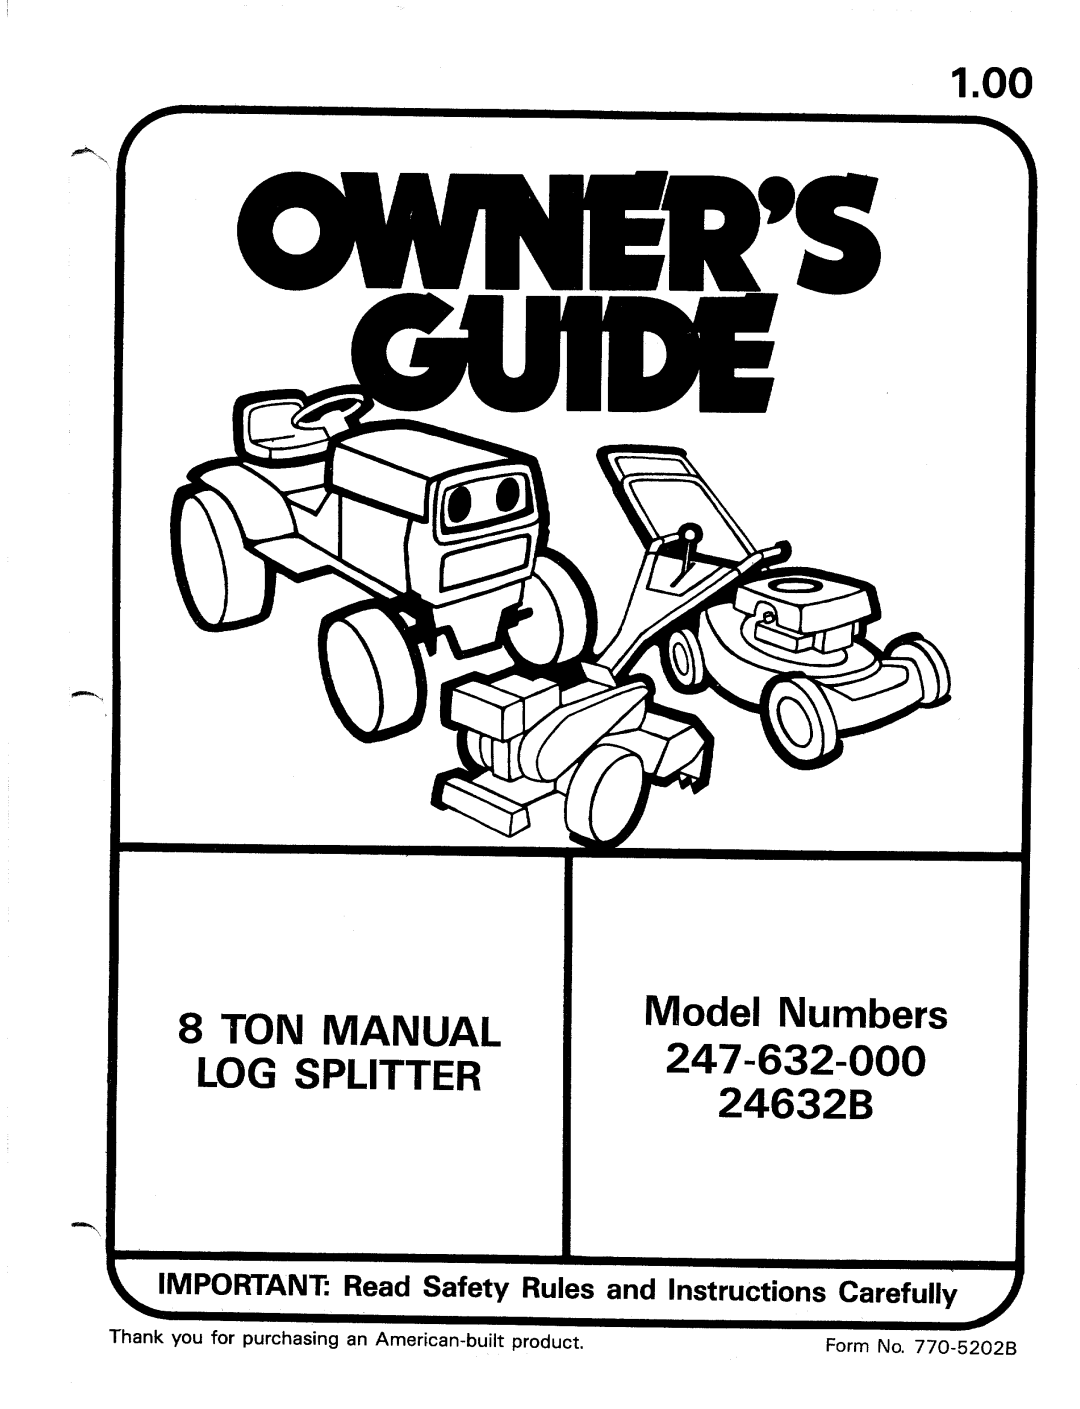 MTD 24632B, 247-632-000 manual 